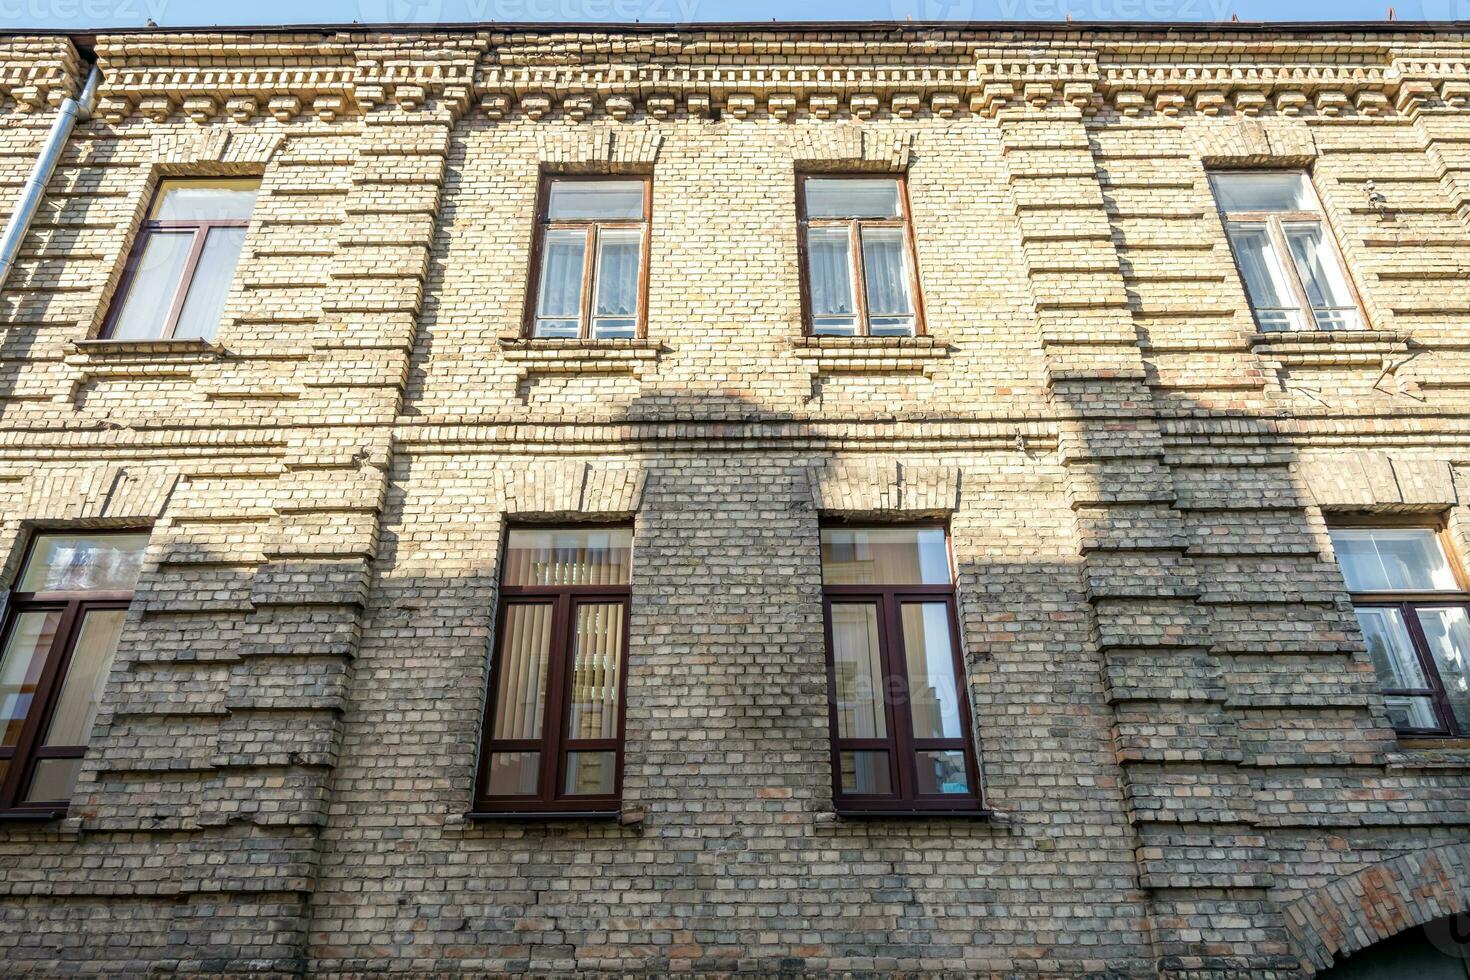 finestre con decorativo elementi su un vecchio di legno o mattone edificio foto